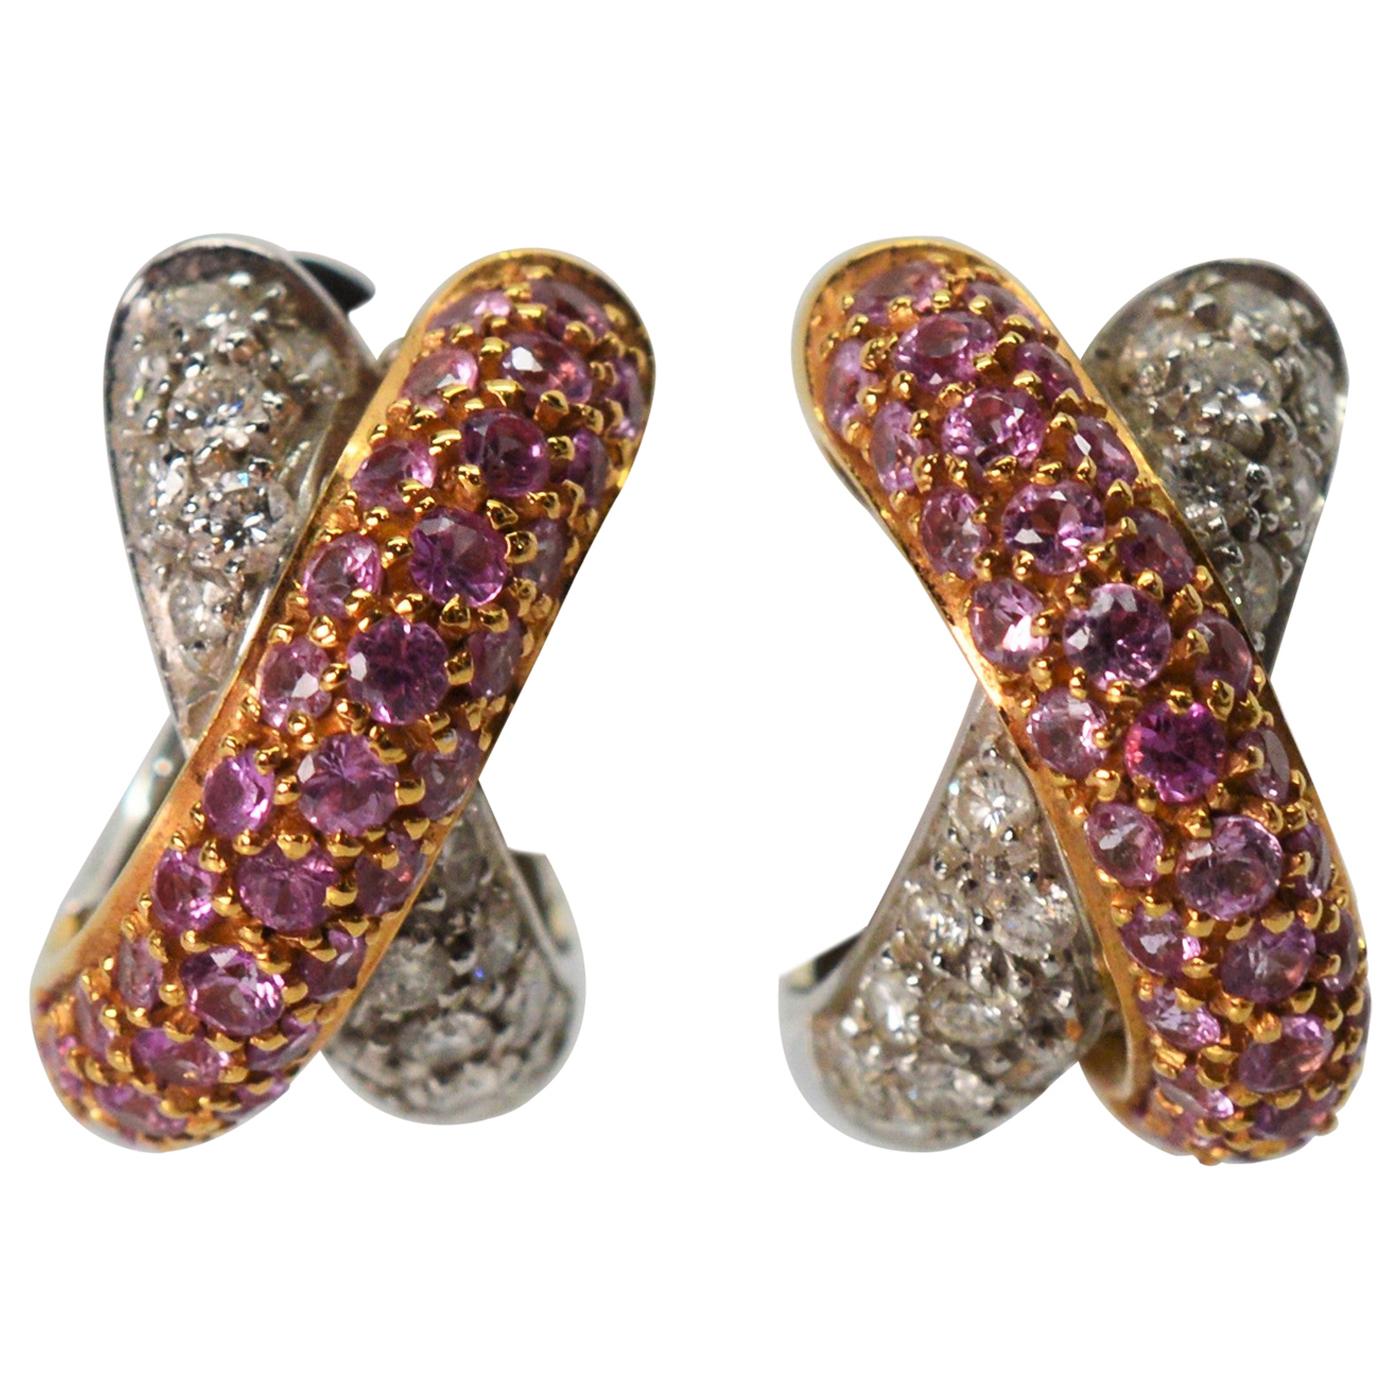 Ruby Diamond 18 Karat Gold Knot Earrings